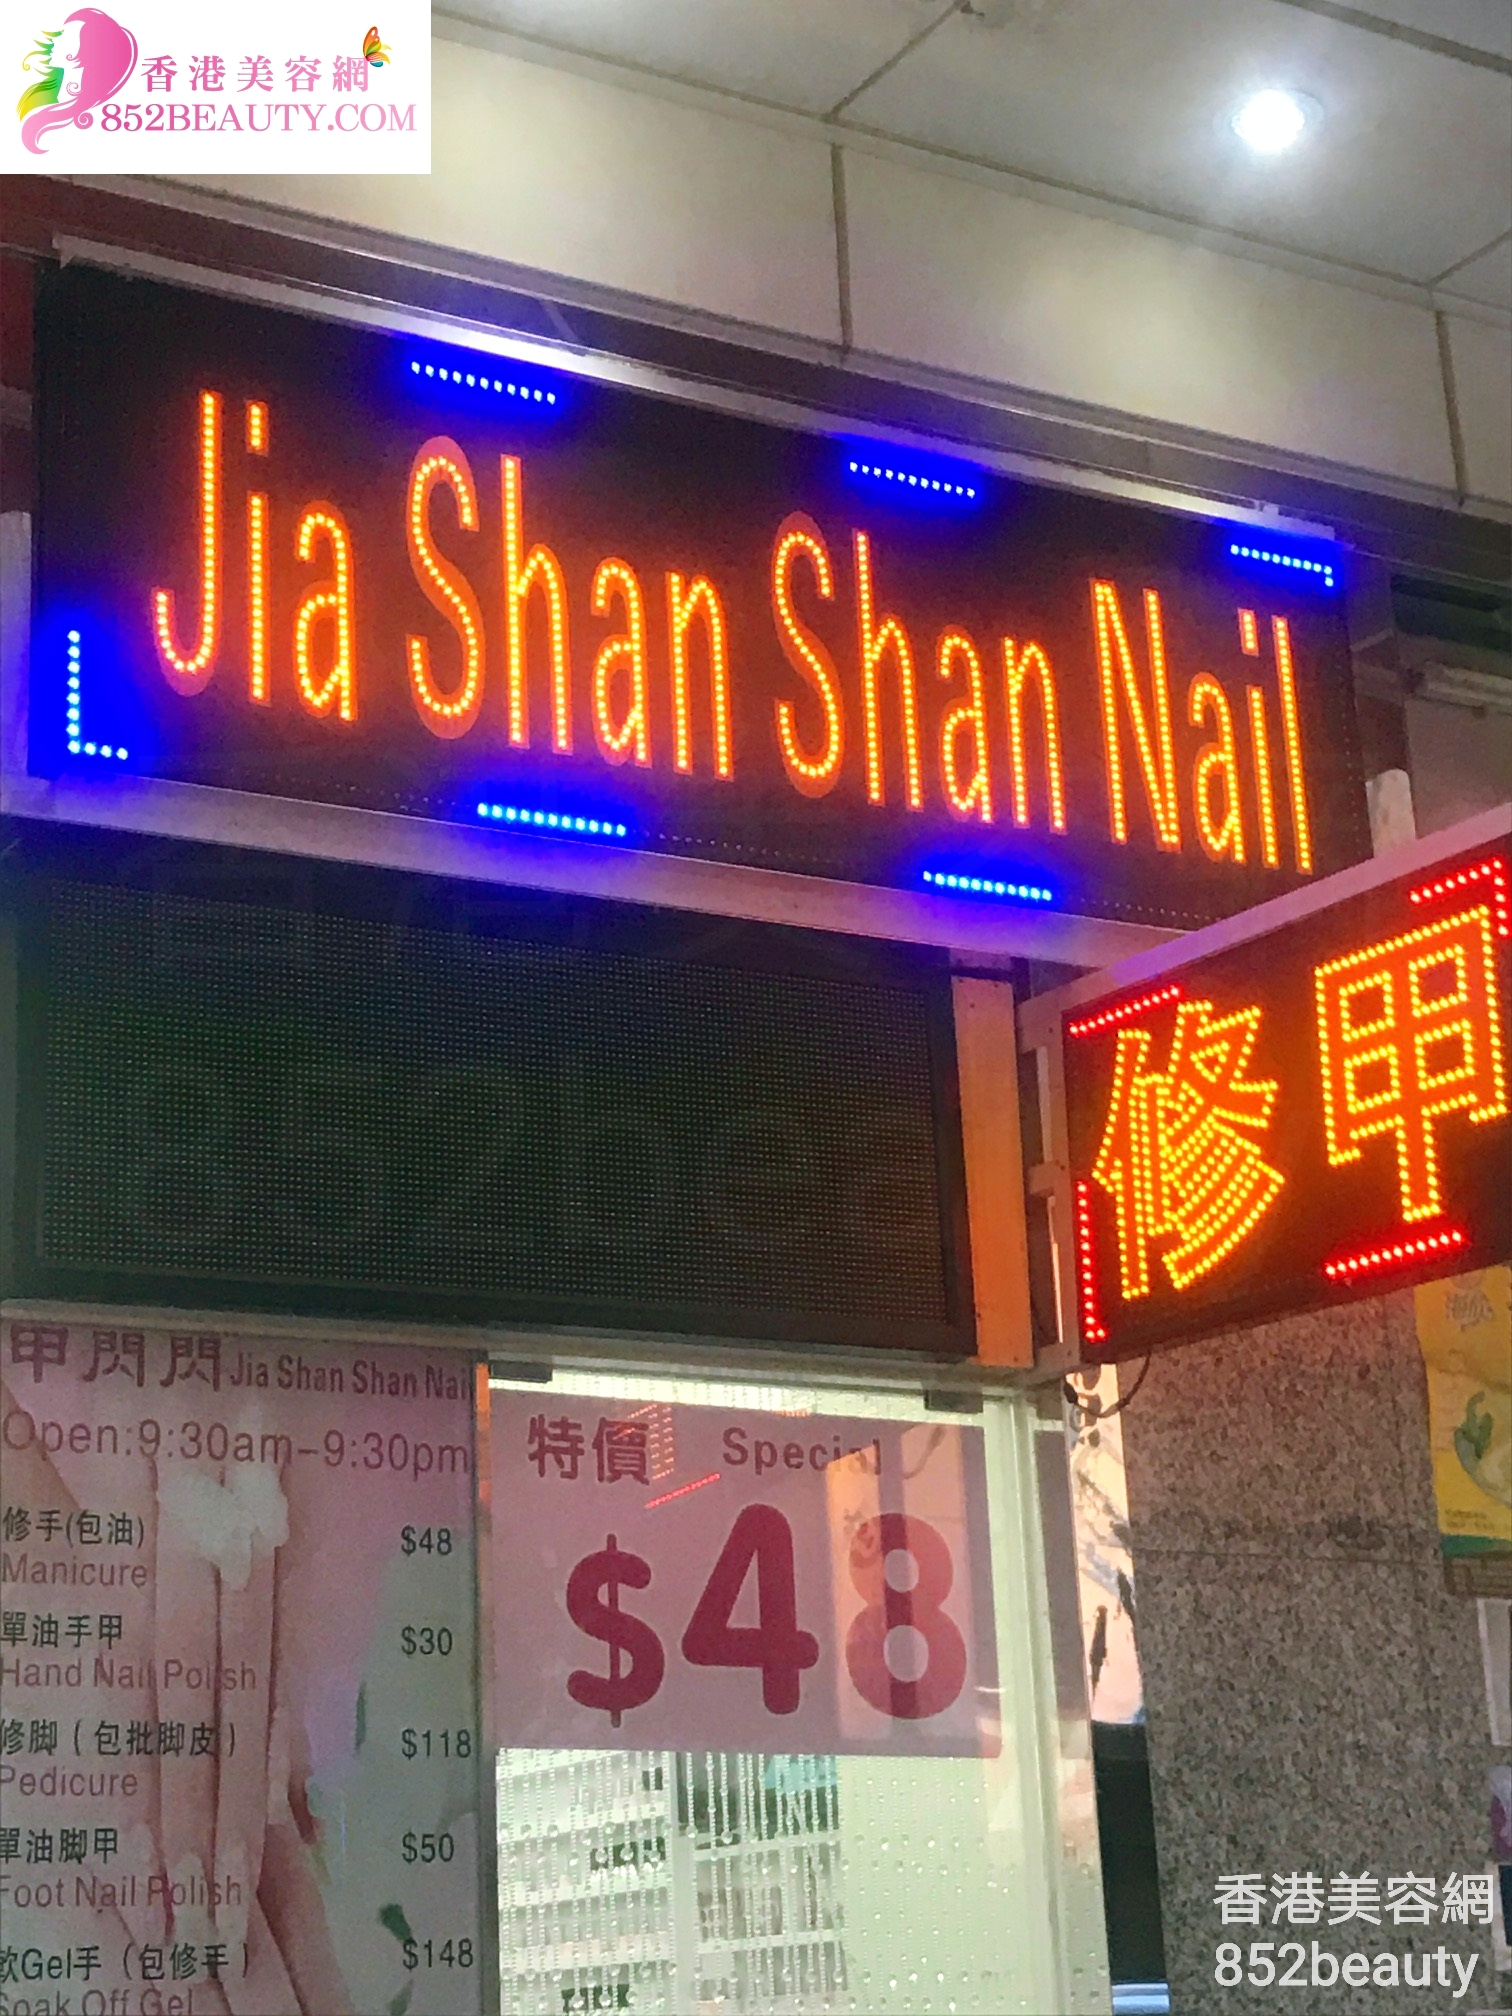 美容院 Beauty Salon: Jia Shan Shan Nail